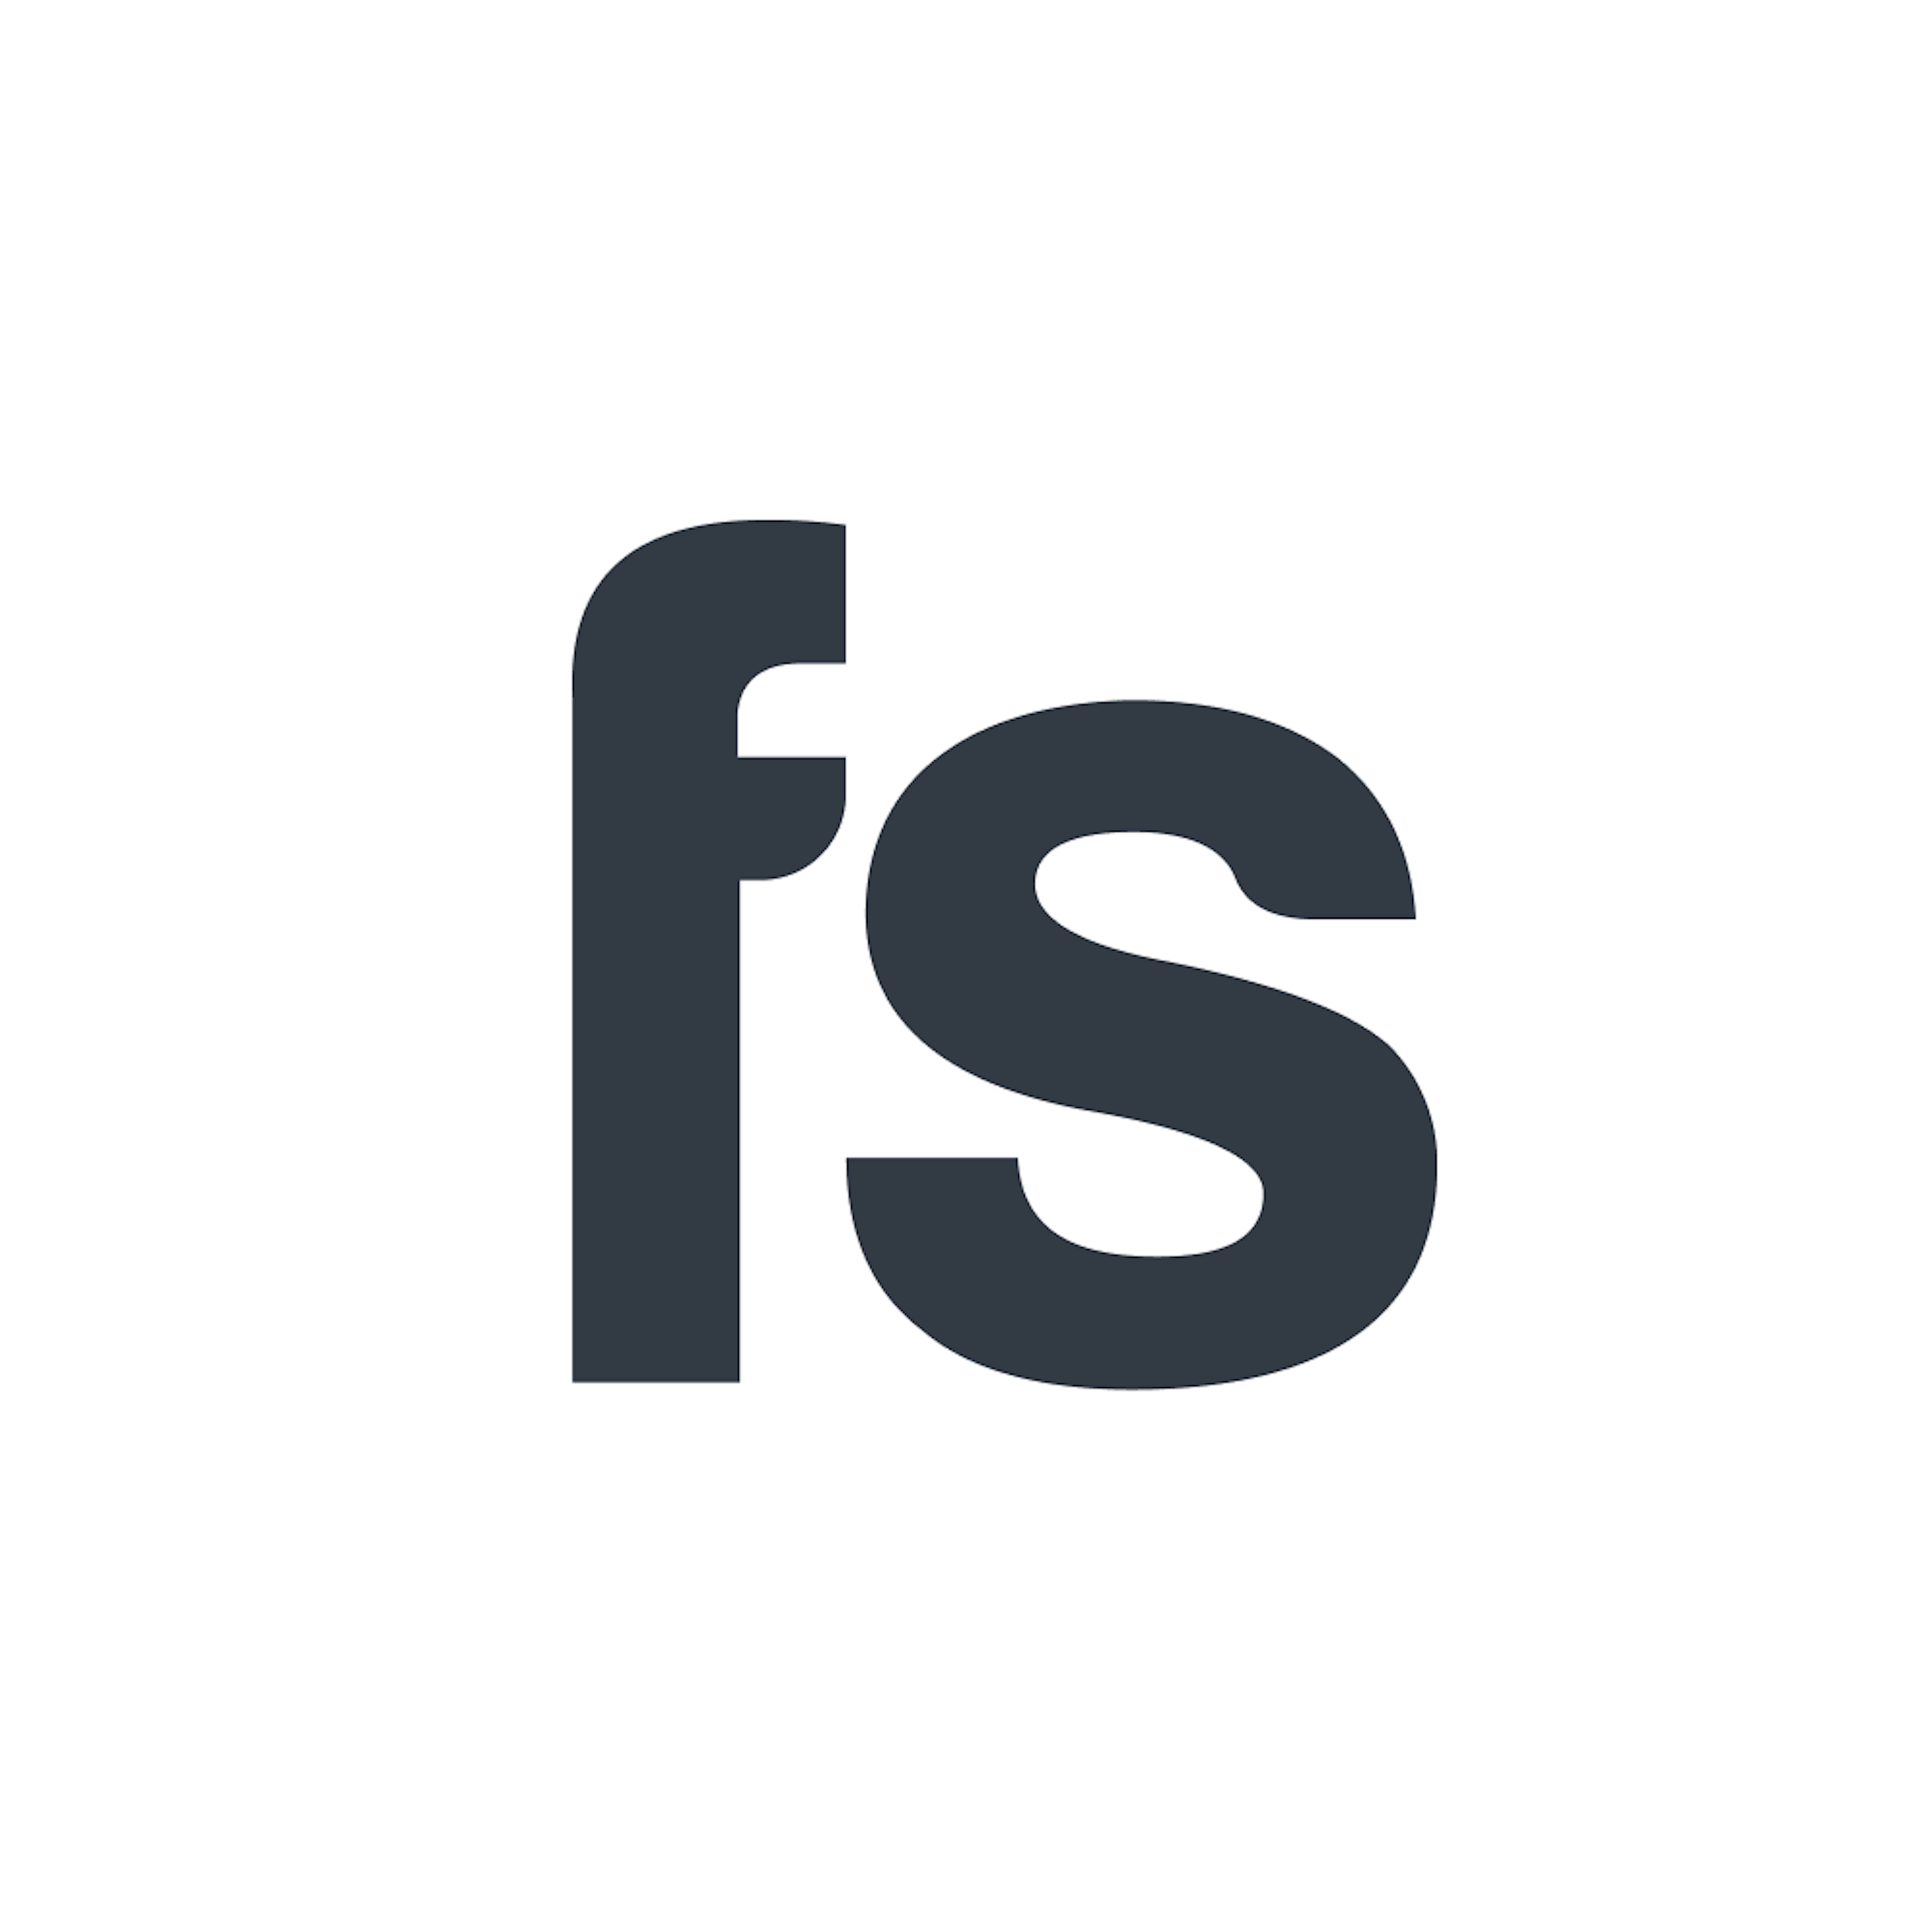 Farseer Logo